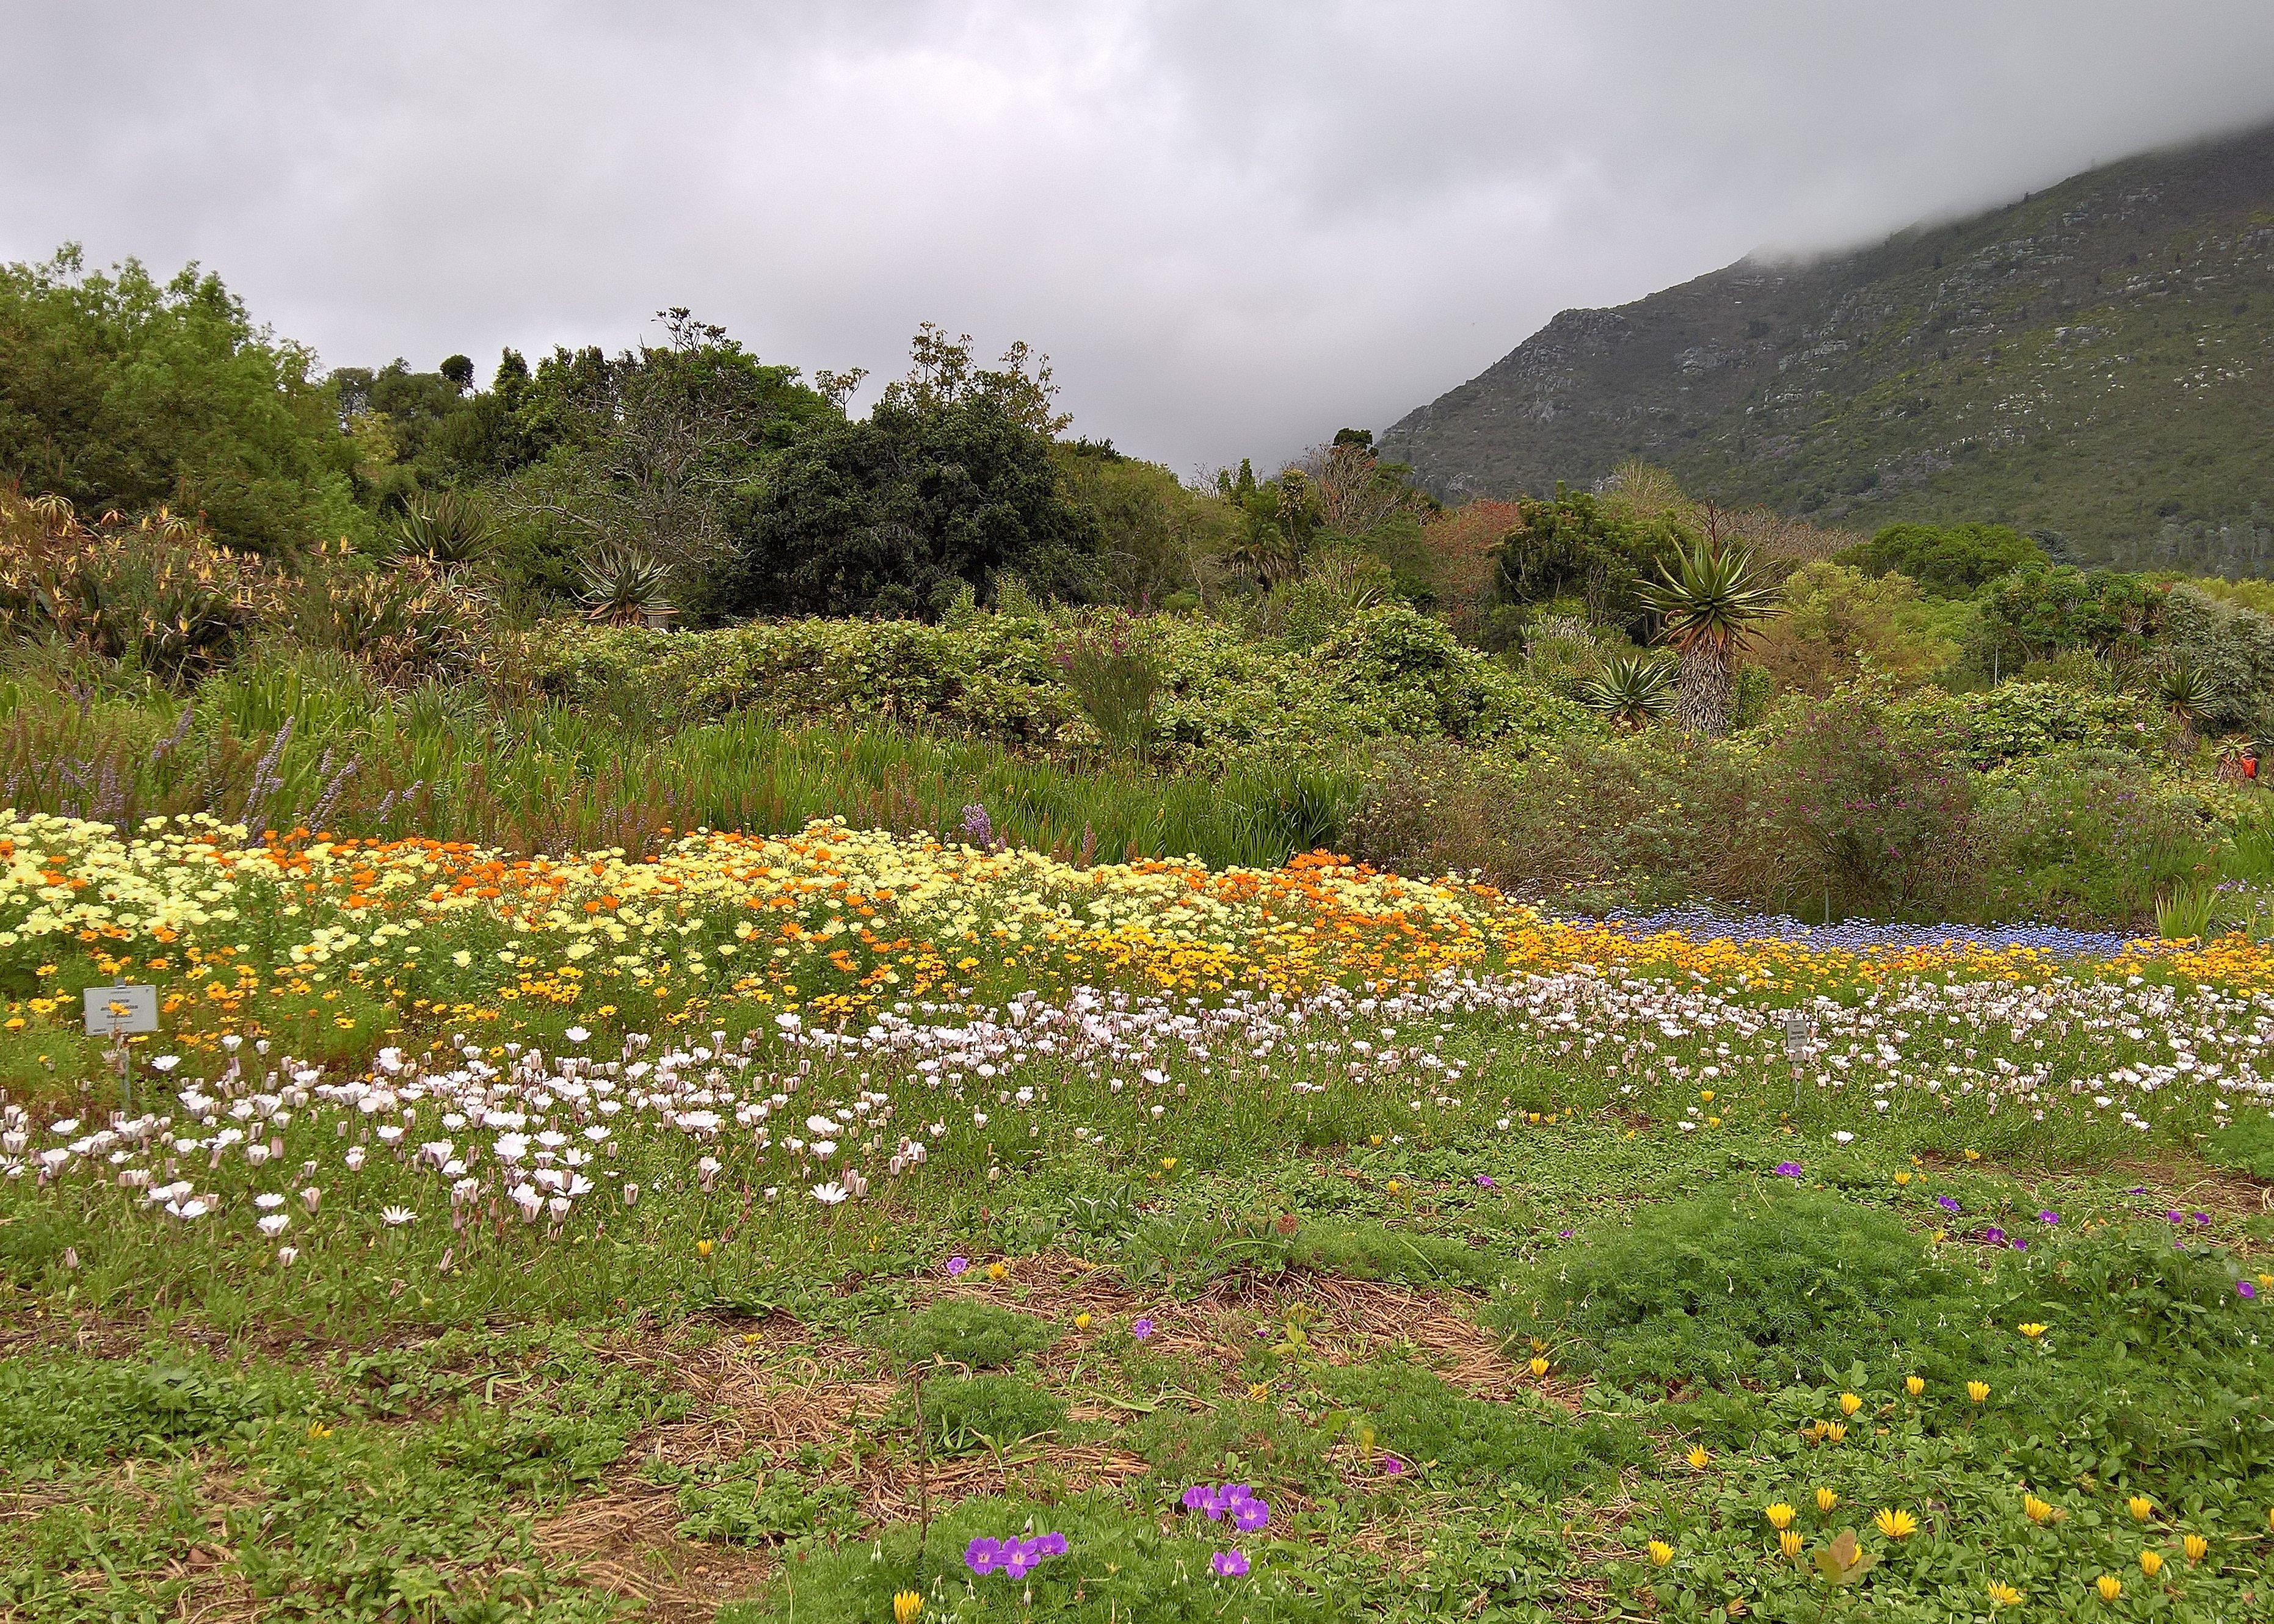 Jardins Botaniques Nationaux de Kirstenbosch, autre fynbos fleuri, Cape Town, Afrique du Sud.